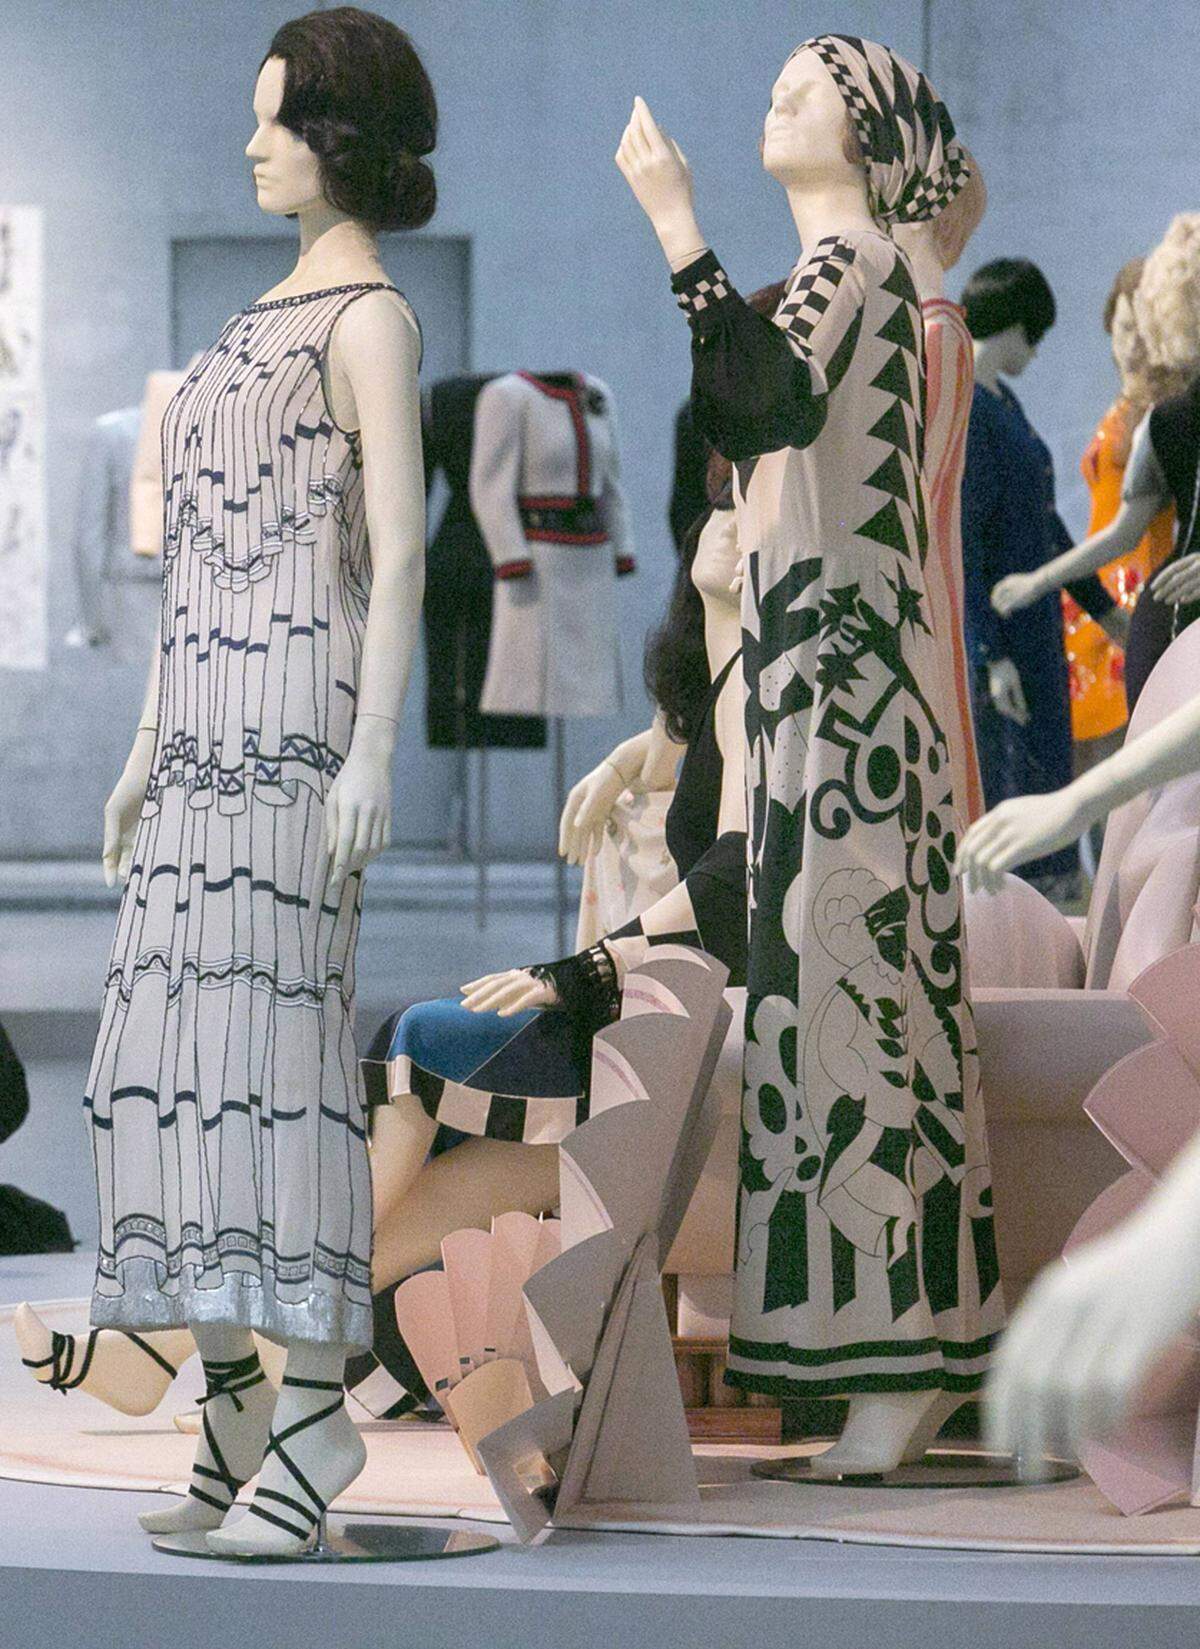 Der letzte Raum widmet sich dann doch der Haute Couture. Im märchenhaft wirkenden "Papier-Palast" dürfen die Besucher träumen: So manche Dame würde sich wohl gerne mal in dem rosa Federkleid sehen, in dem Nicole Kidman einst aufgetreten ist.